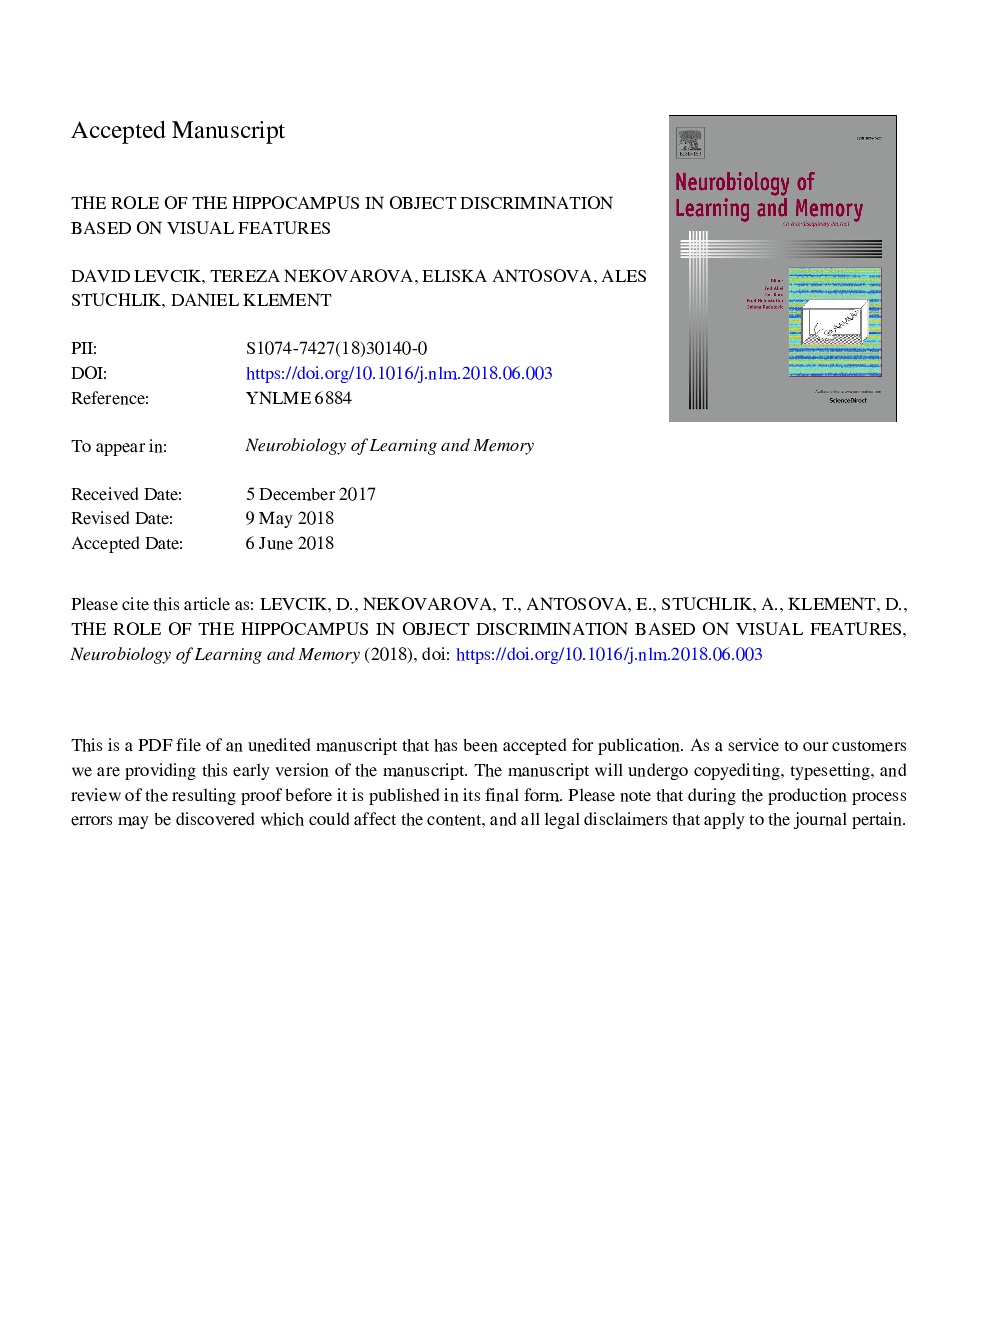 نقش هیپوکامپ در تبعیض بر اساس ویژگی های بصری 